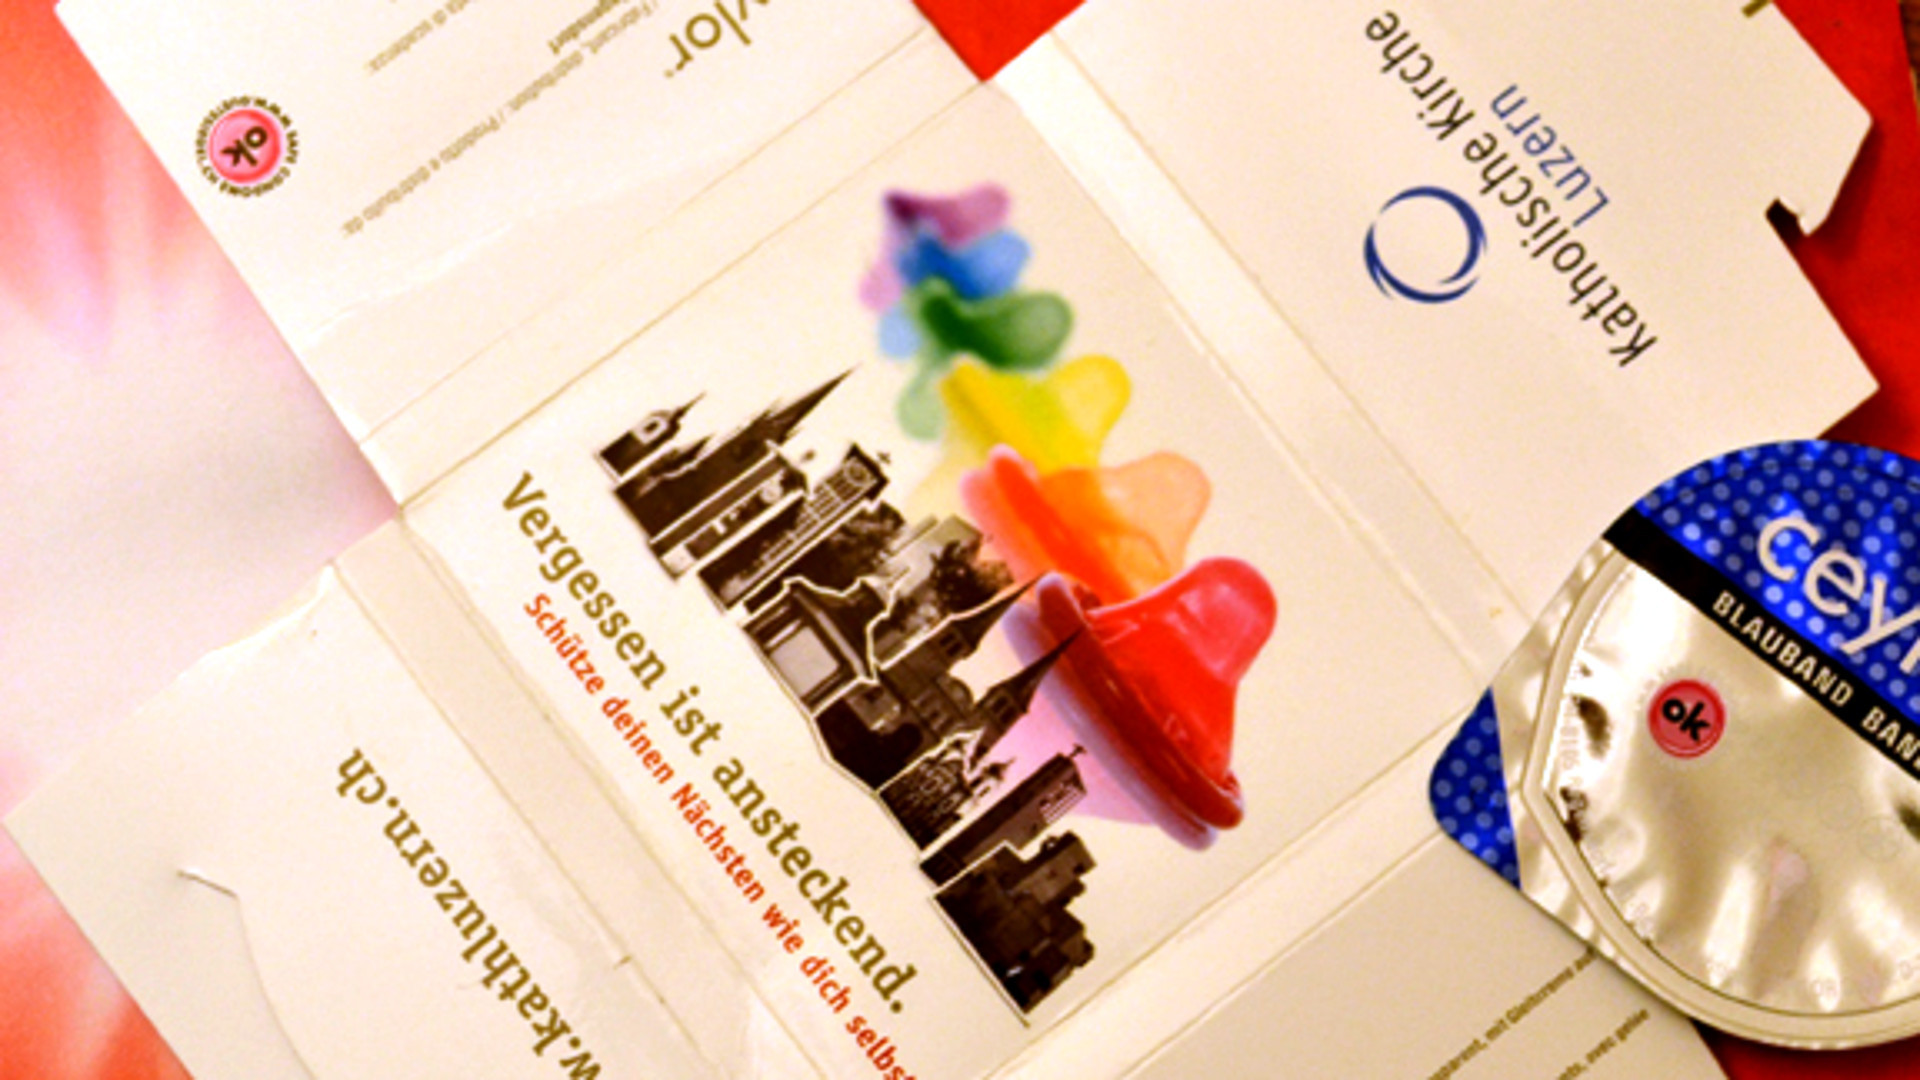 Kondom-Aktion "Schütze deinen Nächsten wie dich selbst" von Luzerns katholischer Kirche